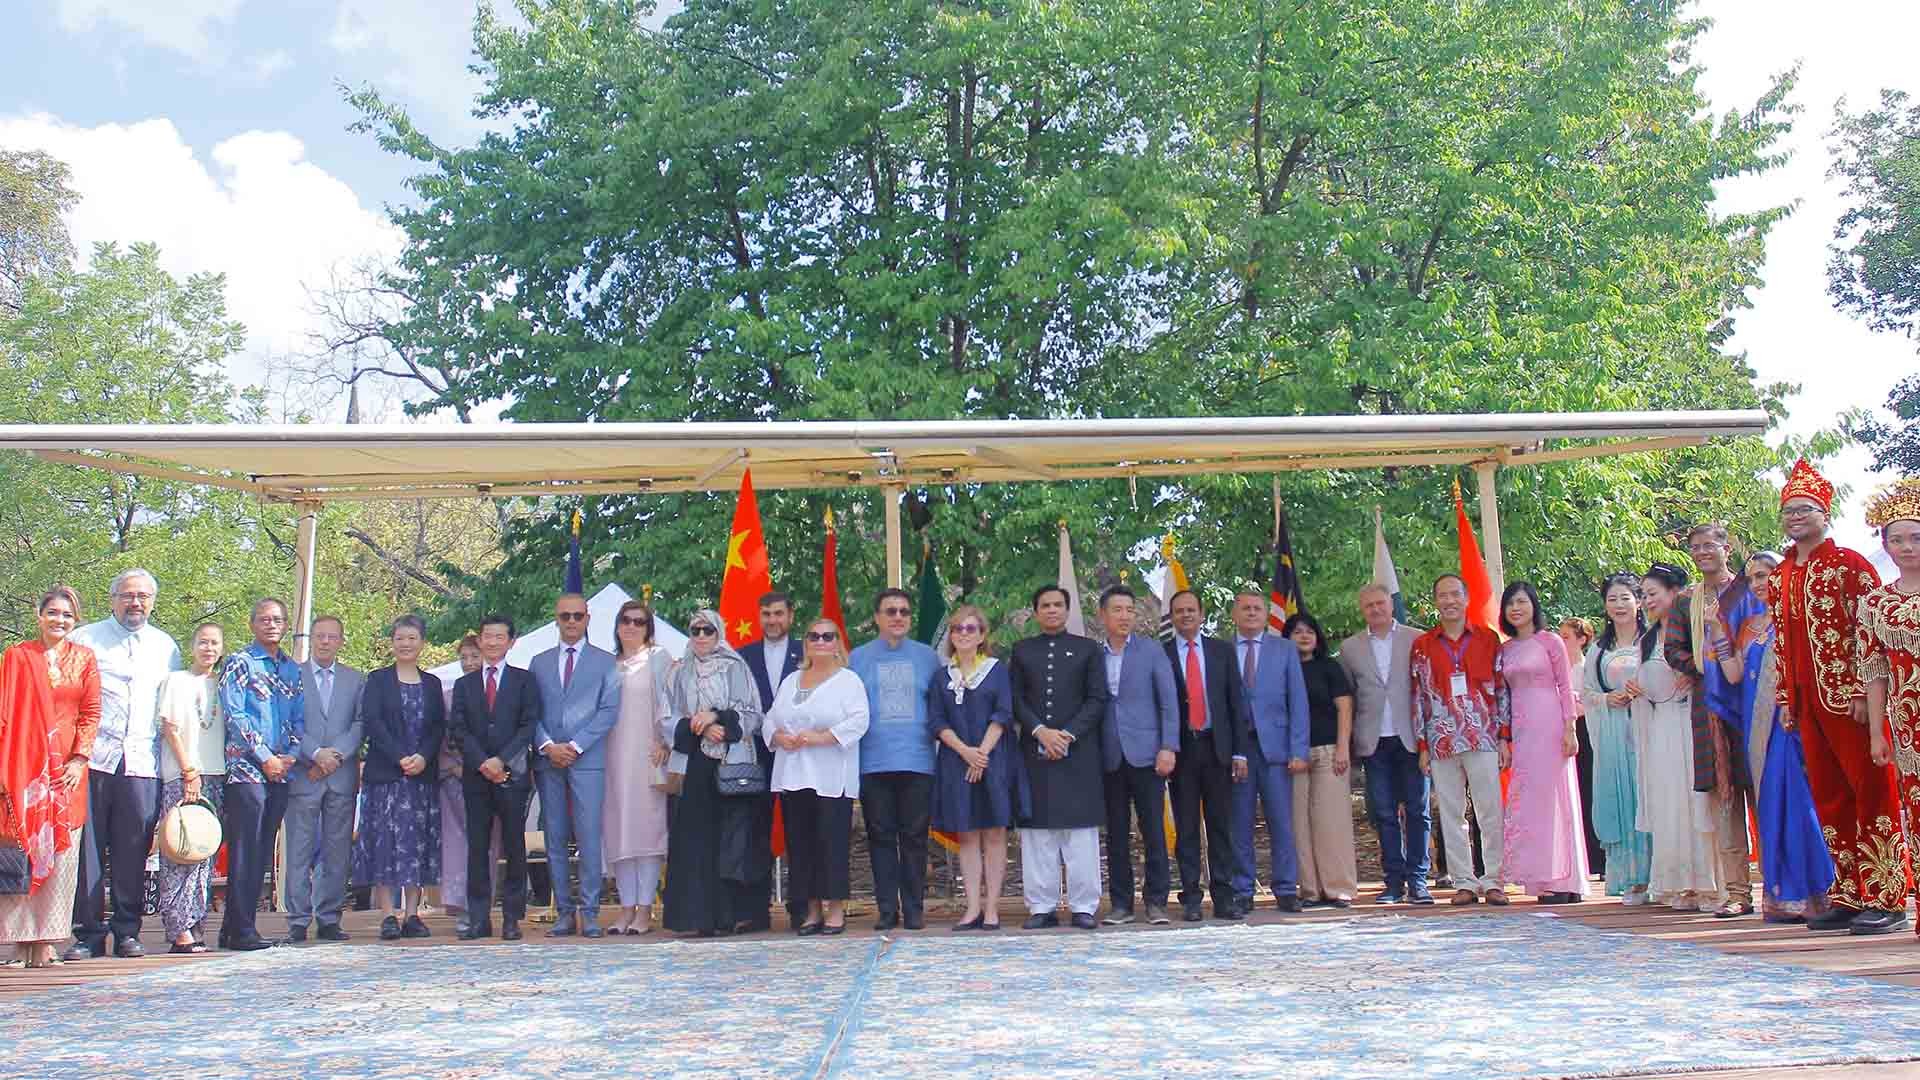 Đại sứ các nước tham dự chụp ảnh cùng các nghệ sĩ.